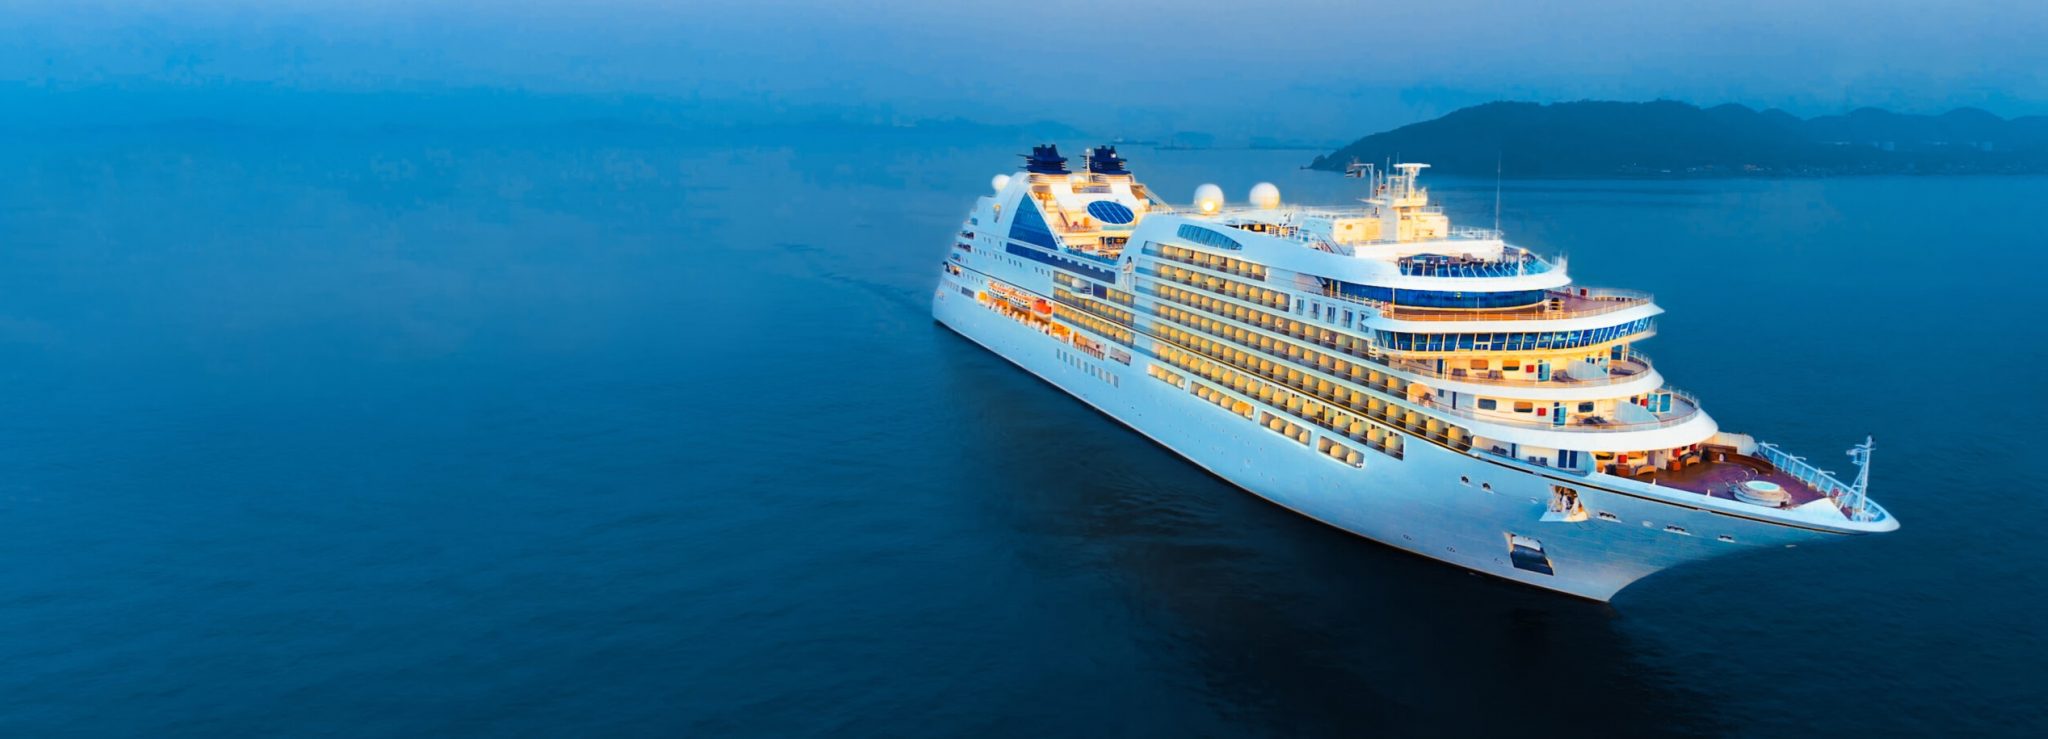 mba cruise ship hospitality management